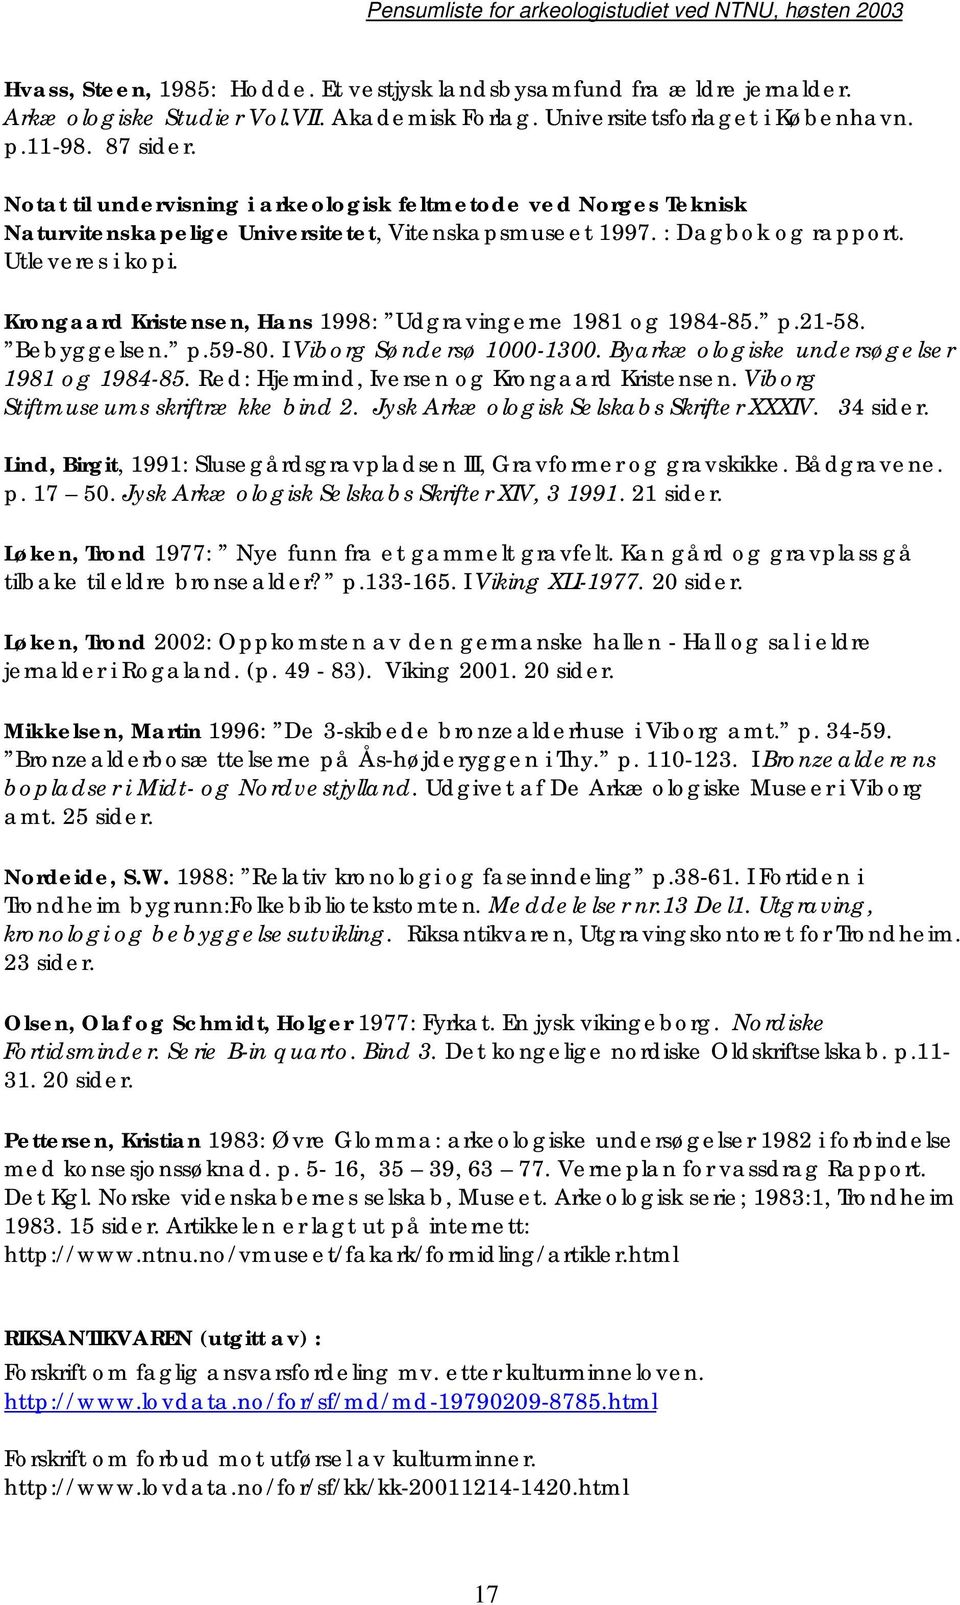 Krongaard Kristensen, Hans 1998: Udgravingerne 1981 og 1984-85. p.21-58. Bebyggelsen. p.59-80. I Viborg Søndersø 1000-1300. Byarkæologiske undersøgelser 1981 og 1984-85.